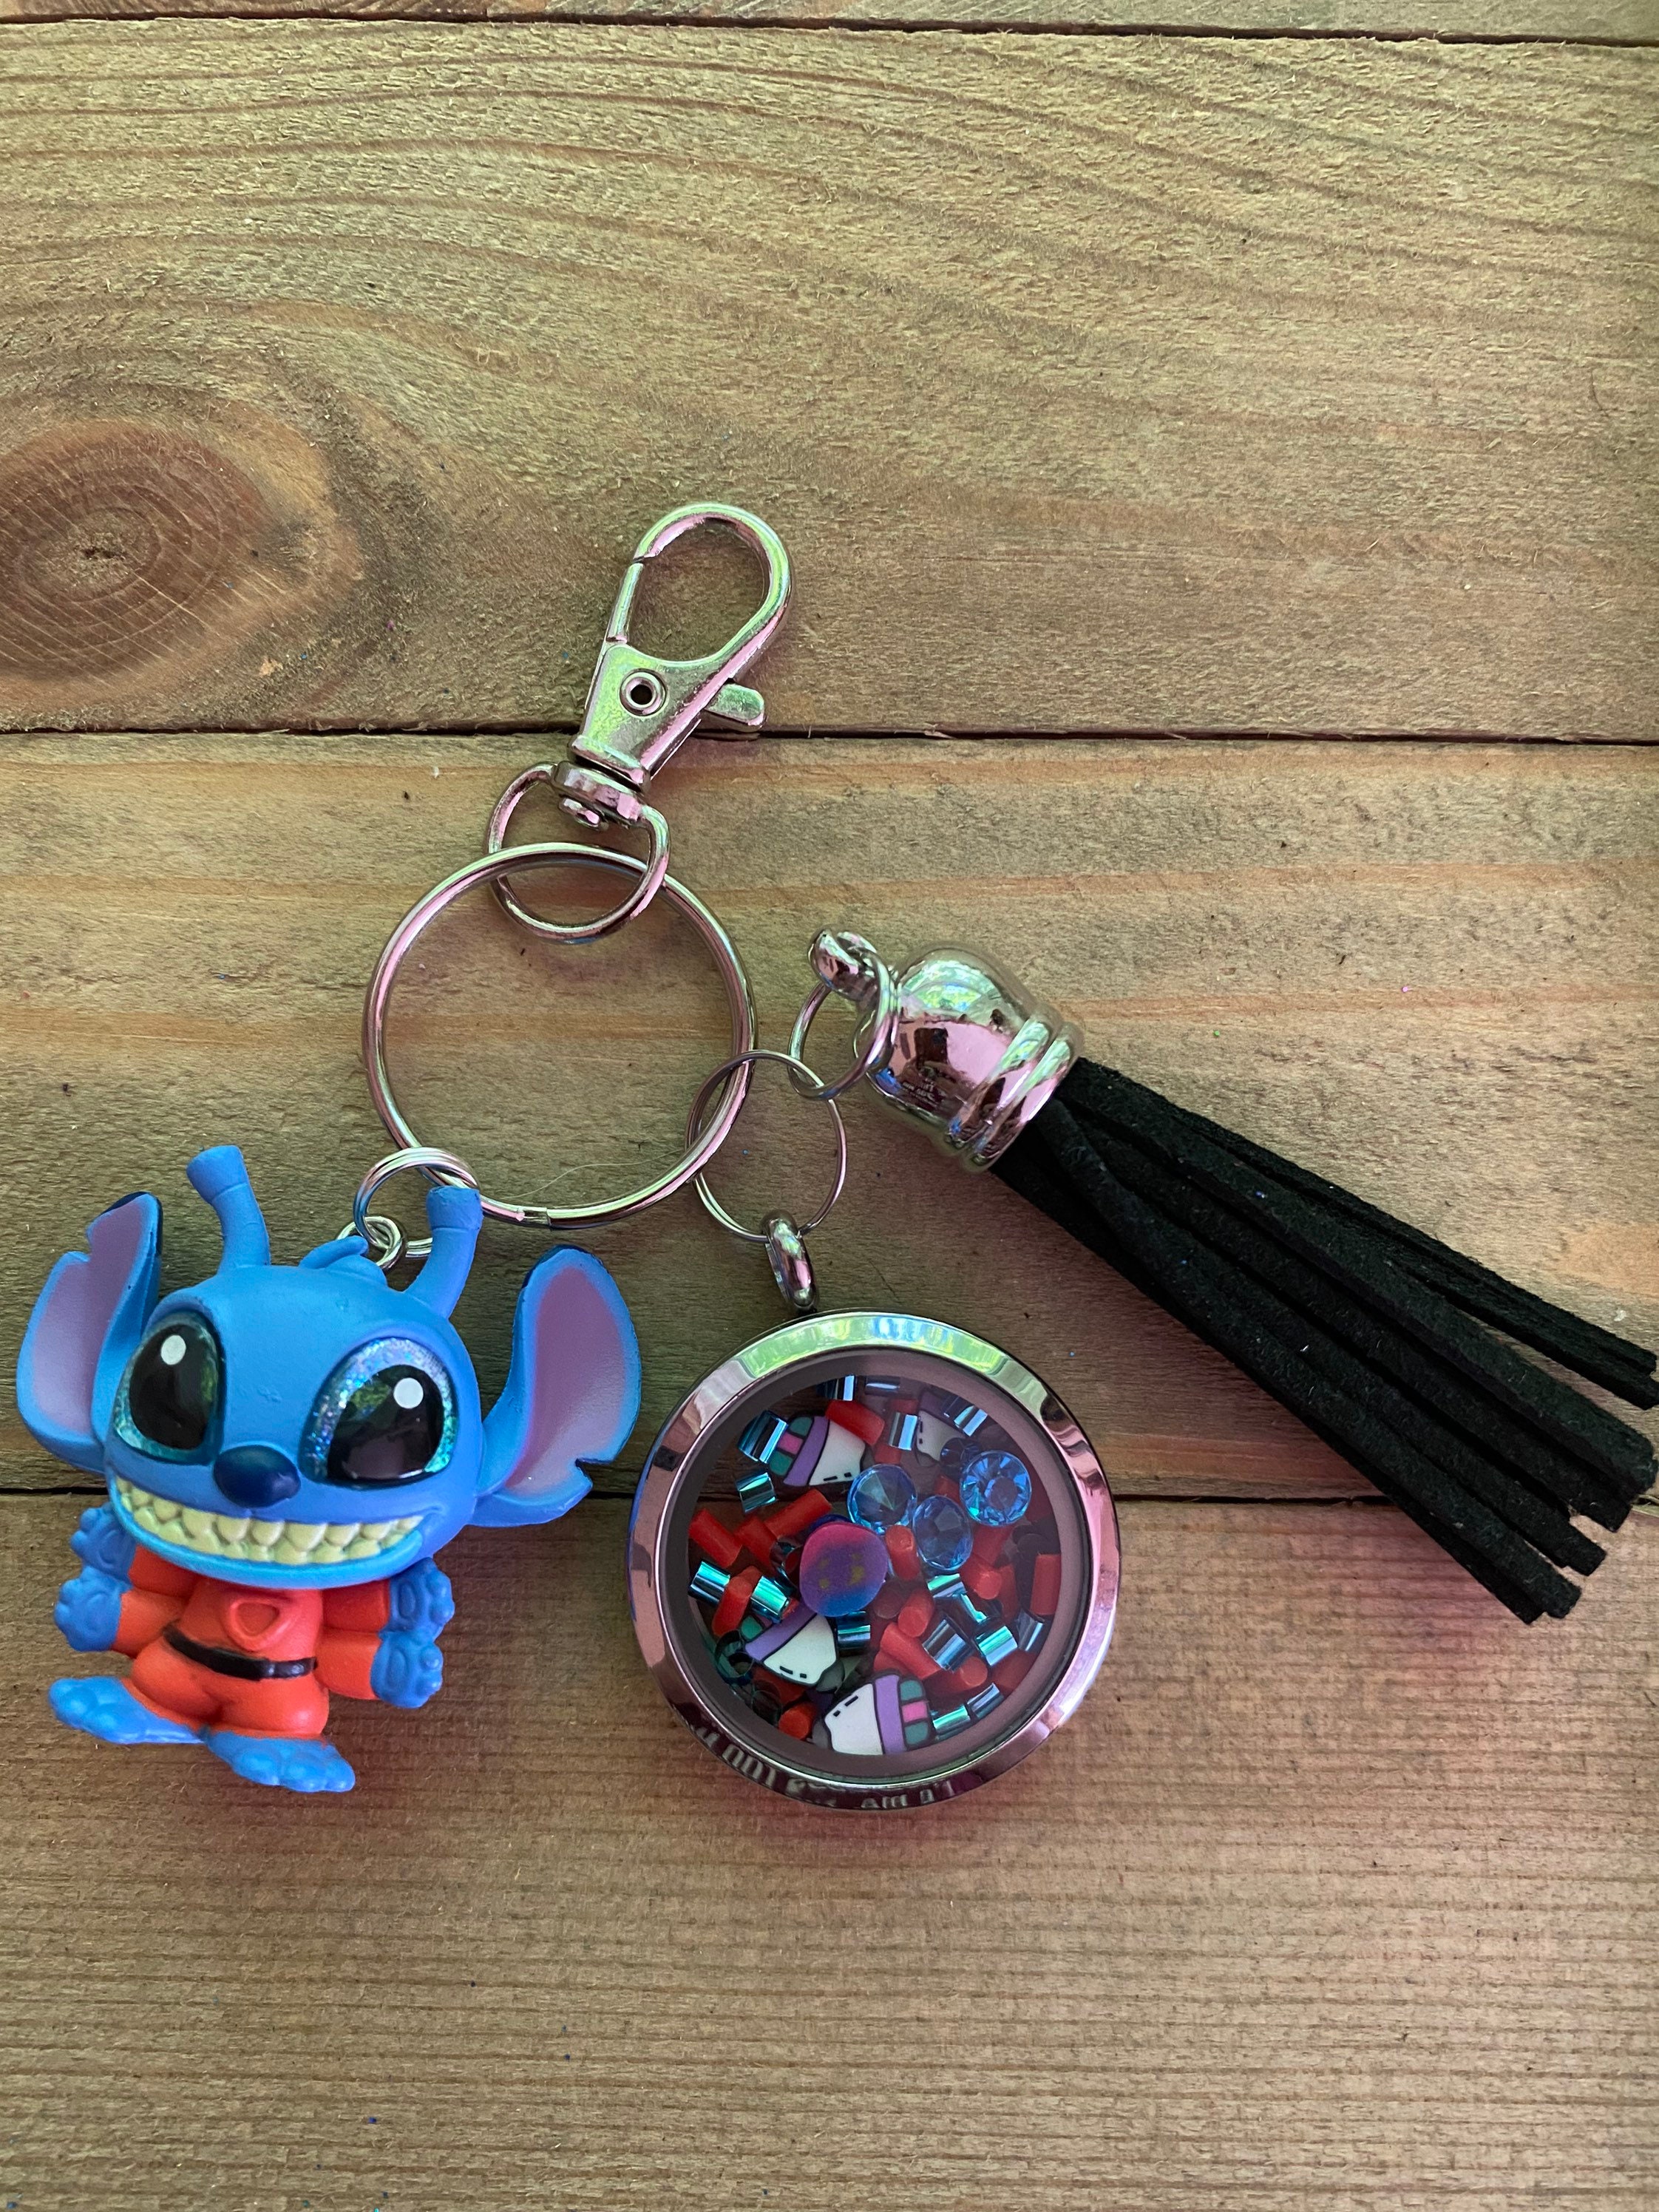 Disney Doorables Lilo & Stitch Keychains, Disney Keychain